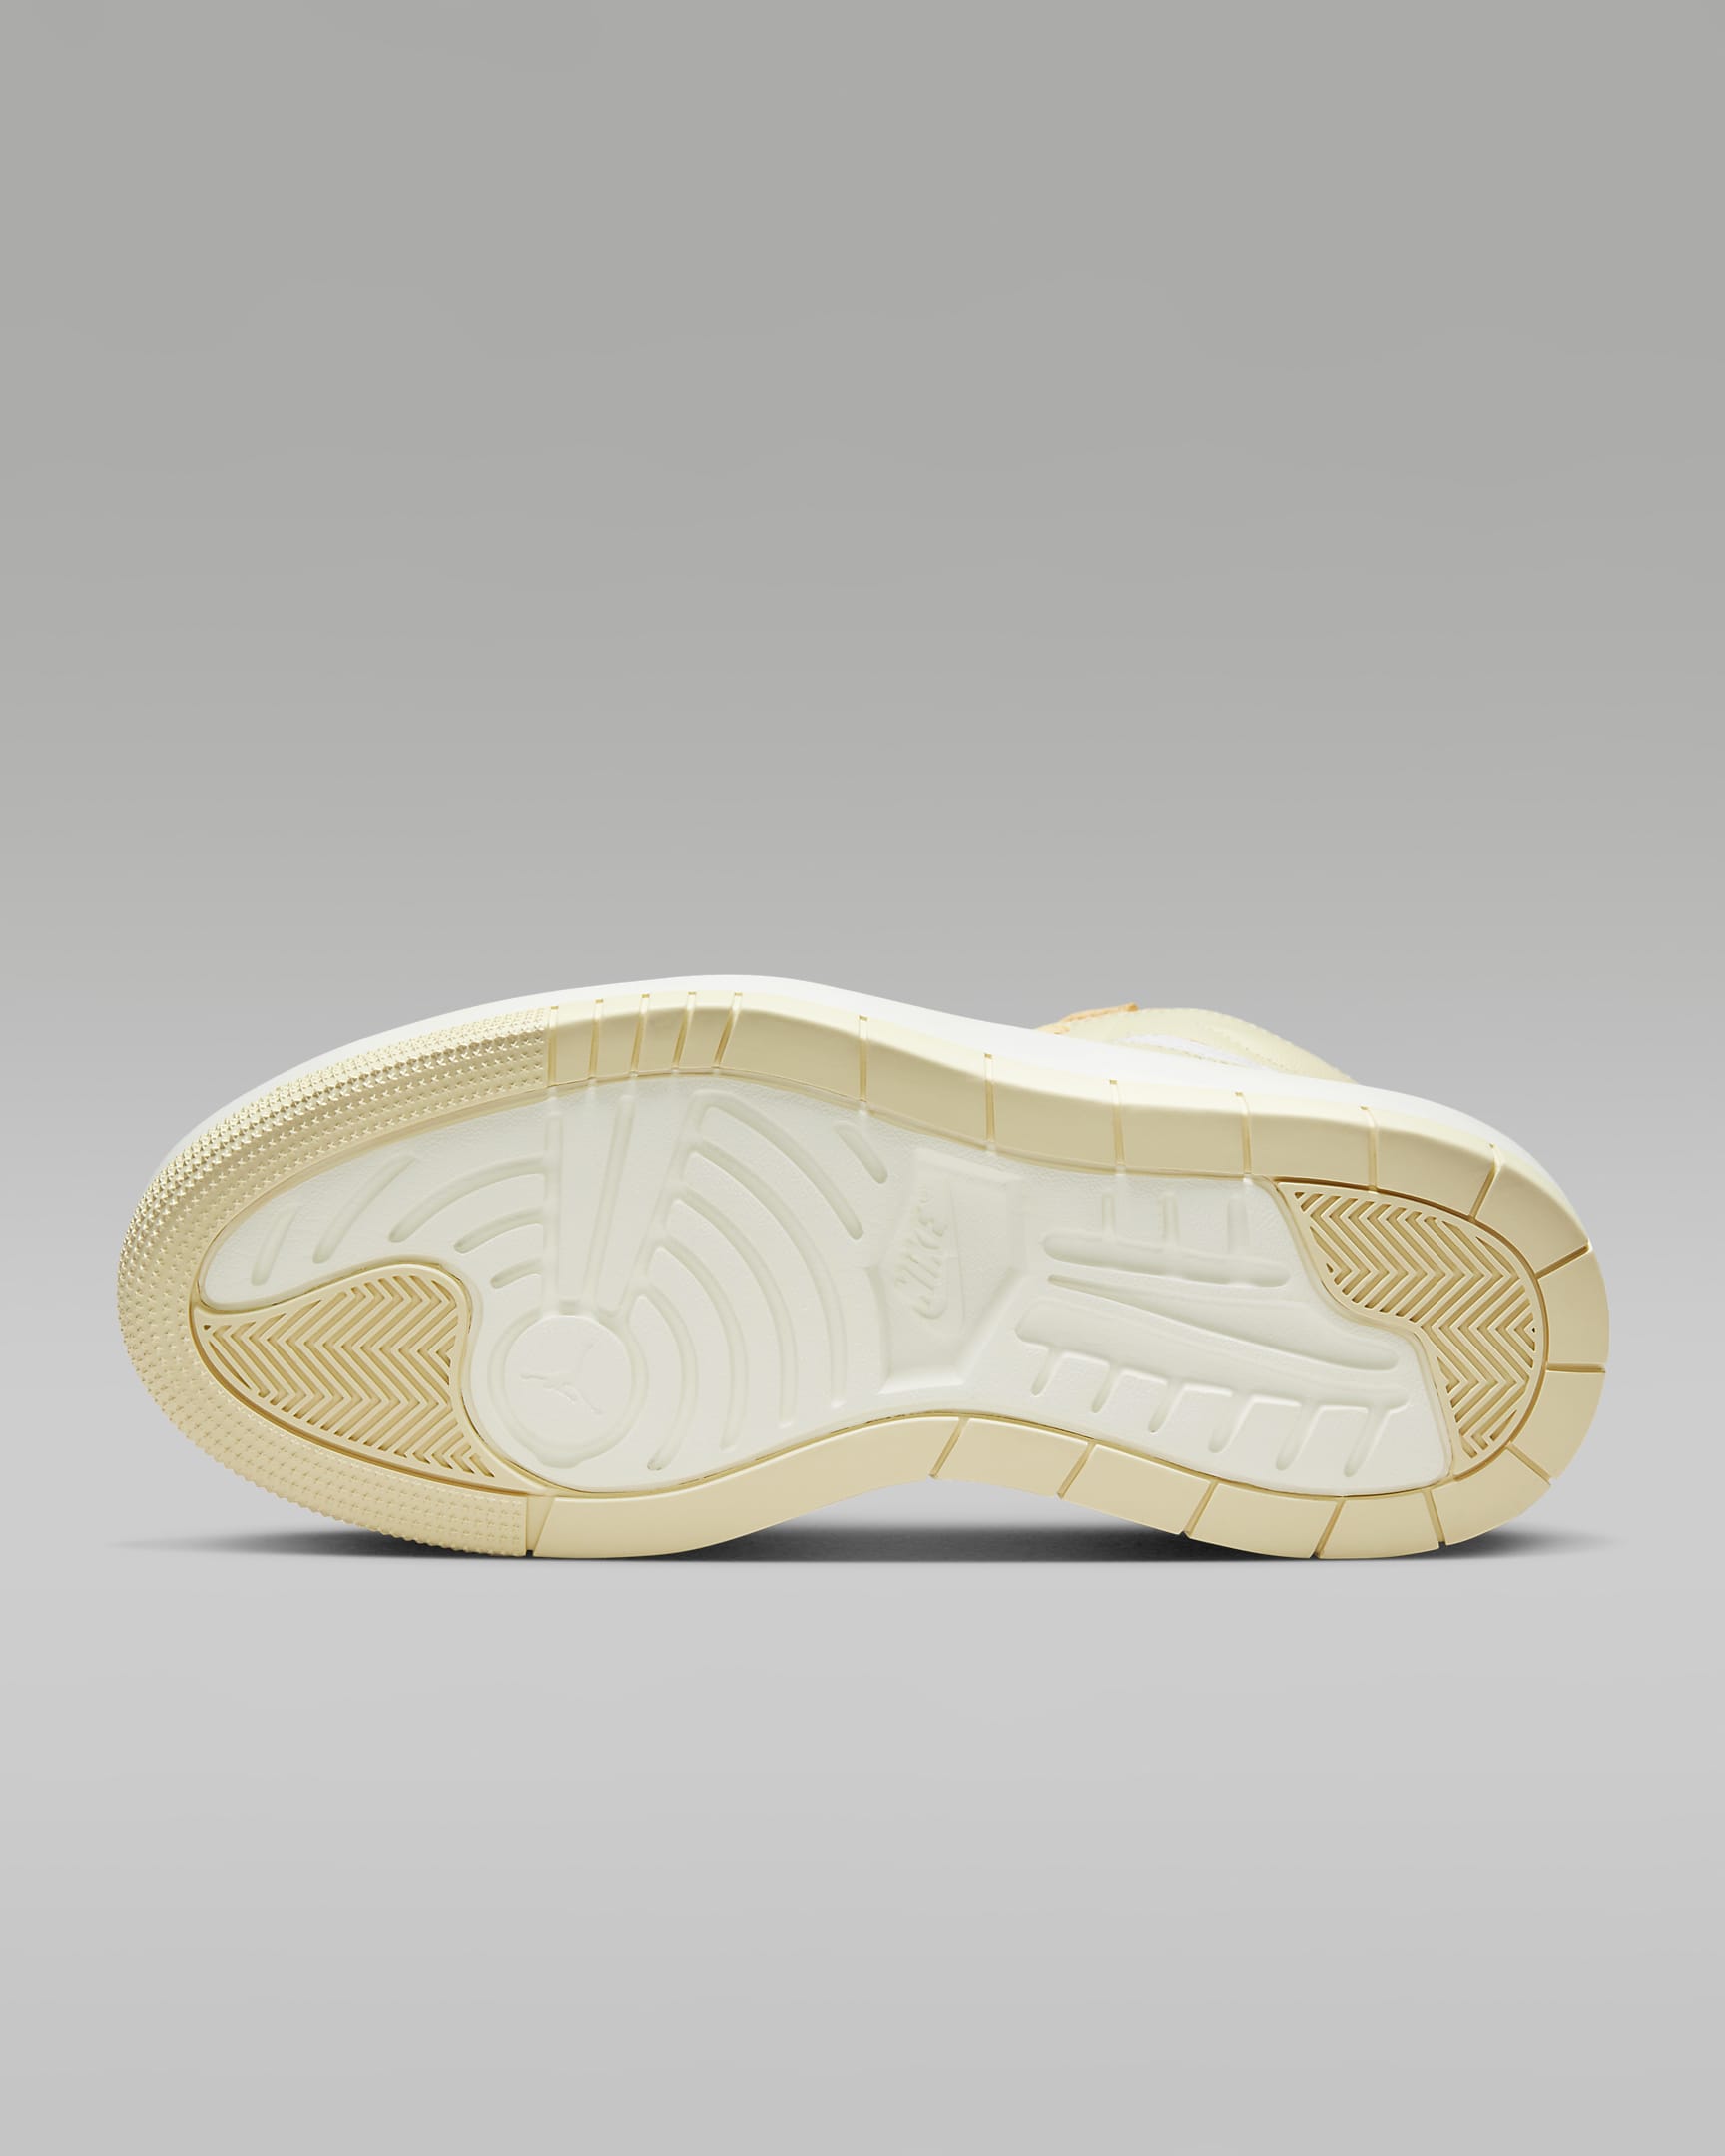 Air Jordan 1 Elevate High Women's Shoes - Celestial Gold/White/Sail/Muslin